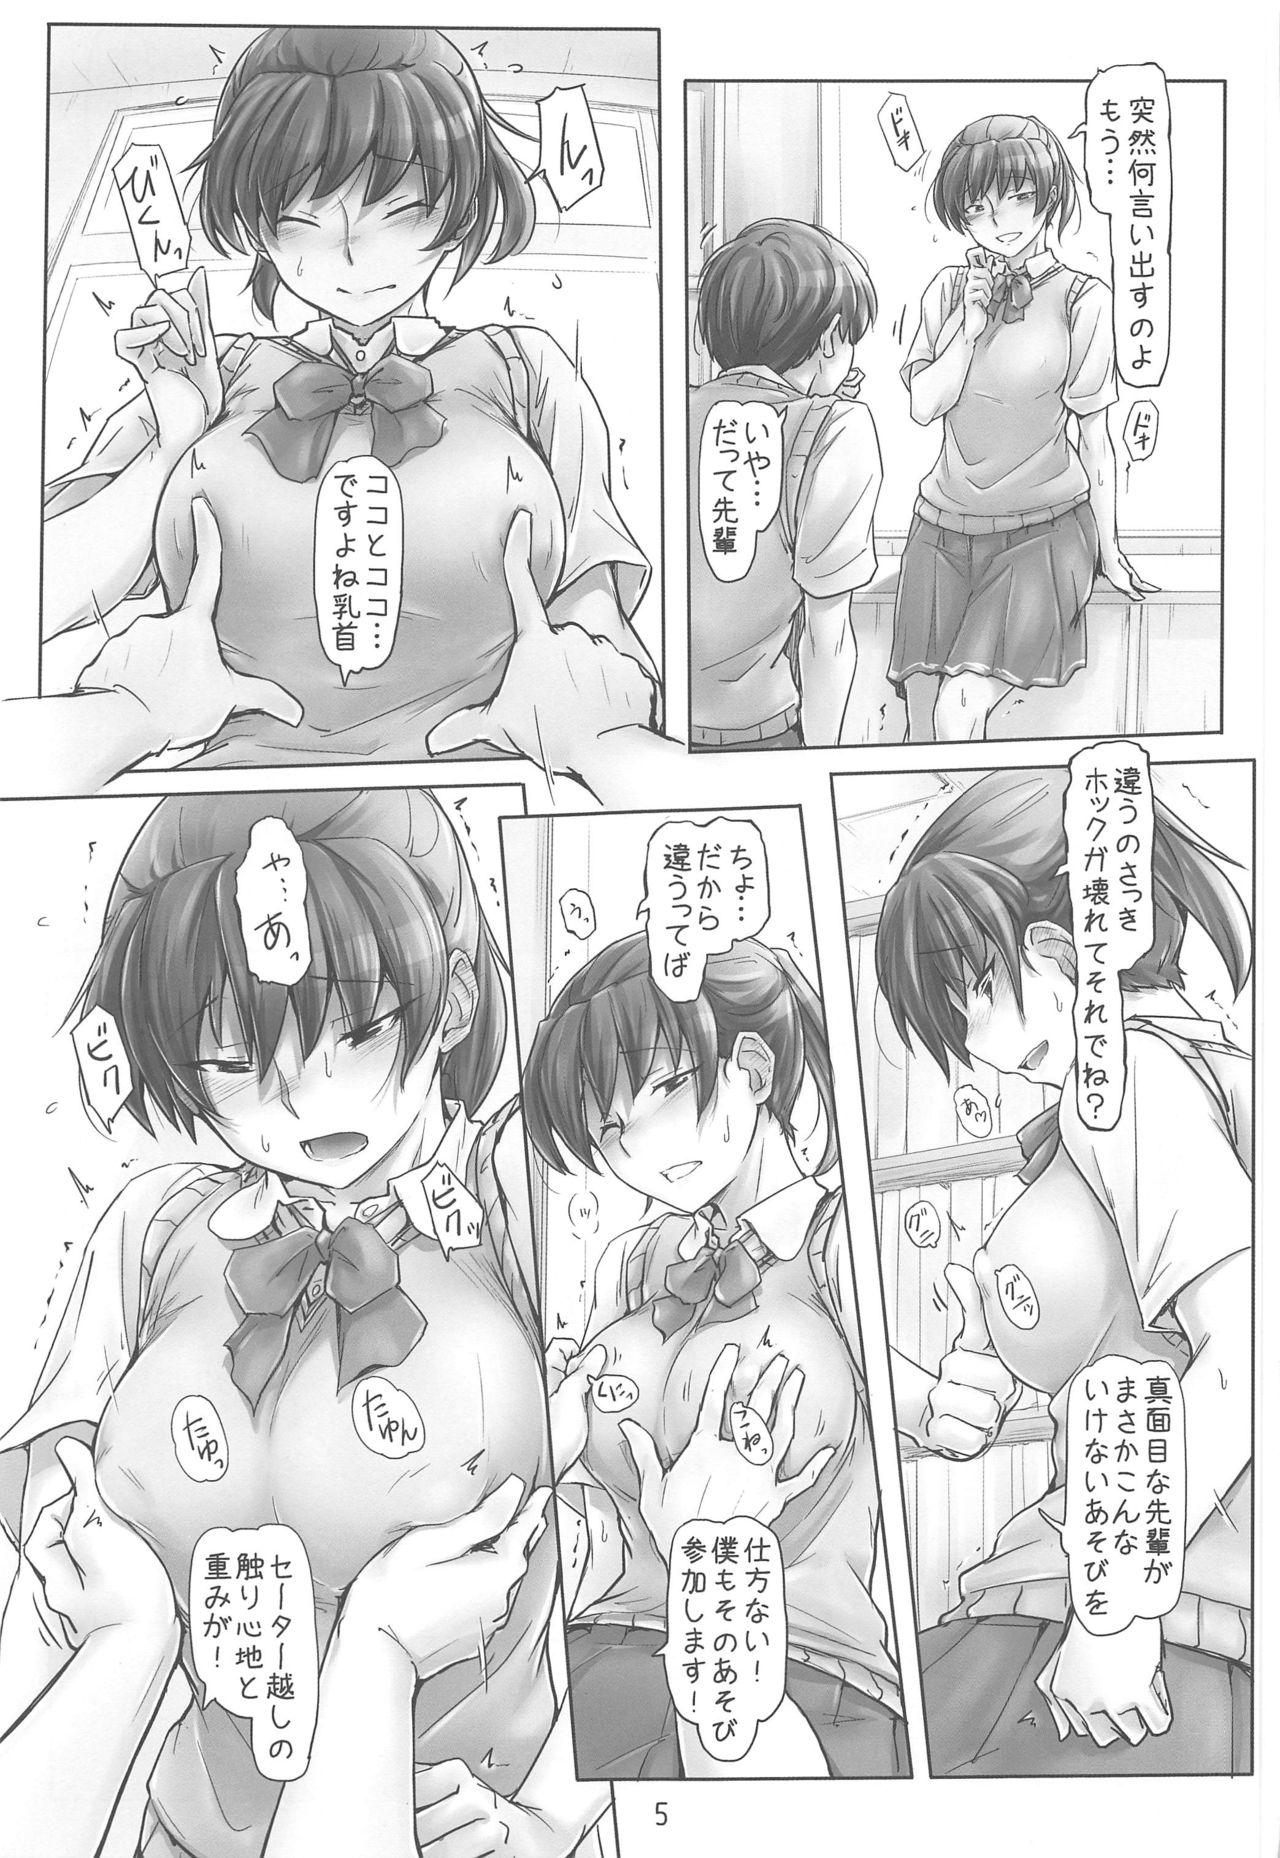 Fit Shinpai Shita Kare ga Ie made Okutte Kurete Ureshikatta kara Date de Chotto Daitan na Hibiki-san - Amagami Perverted - Page 4